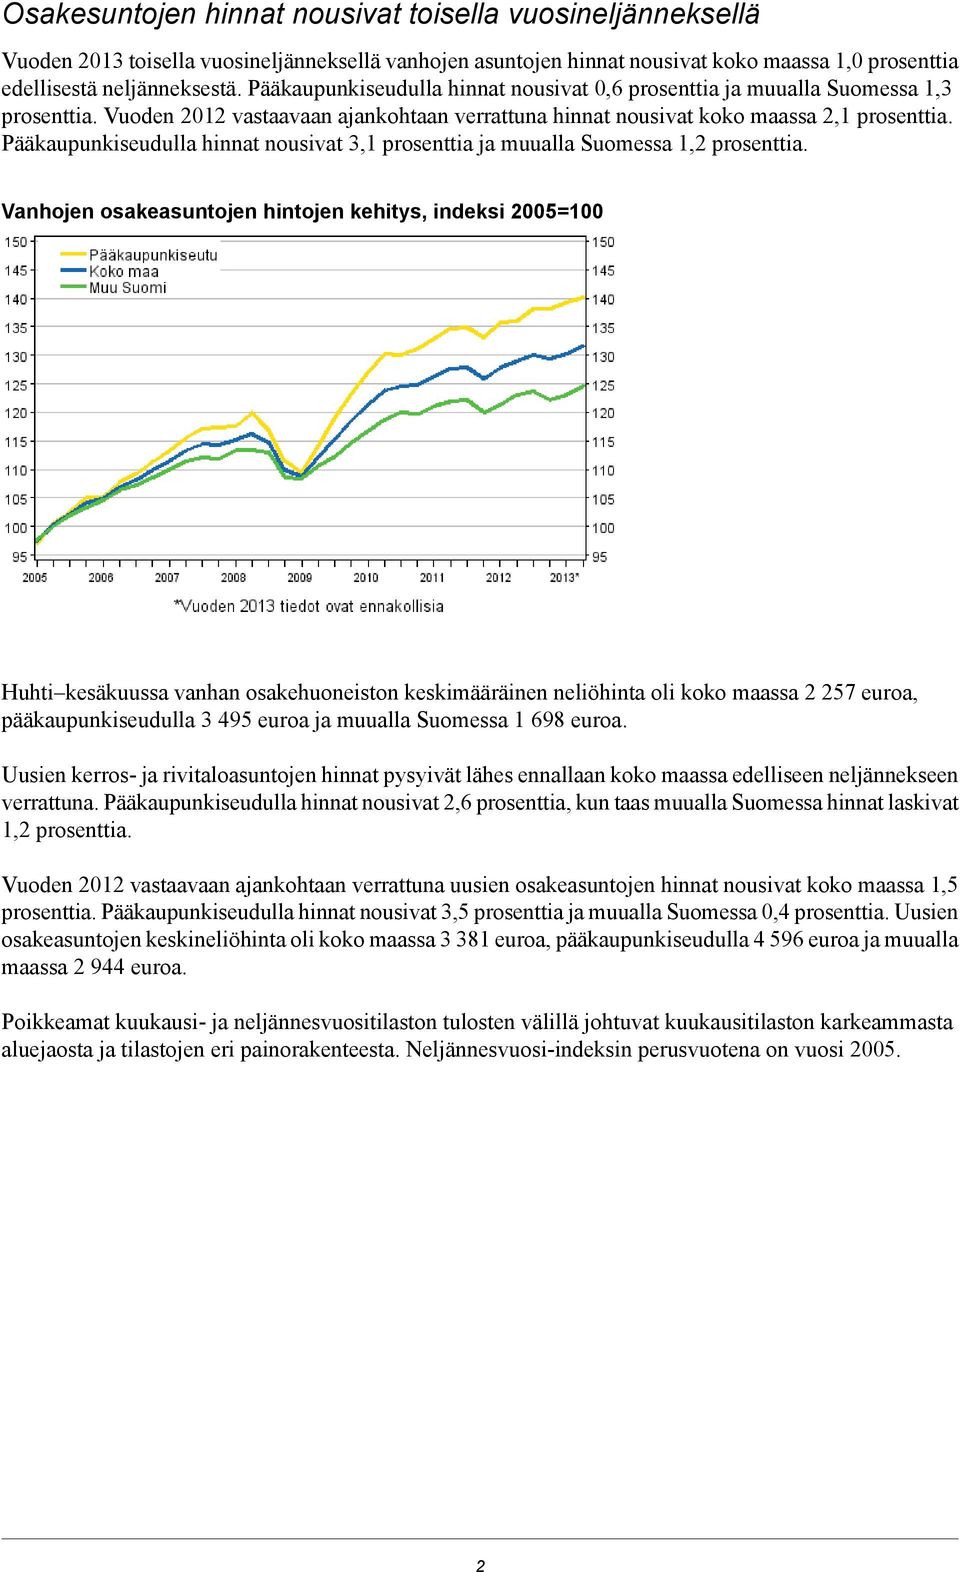 nousivat 3,1 prosenttia ja muualla Suomessa prosenttia Vanhojen osakeasuntojen hintojen kehitys, indeksi 2005=100 Huhti kesäkuussa vanhan osakehuoneiston keskimääräinen neliöhinta oli koko maassa 2